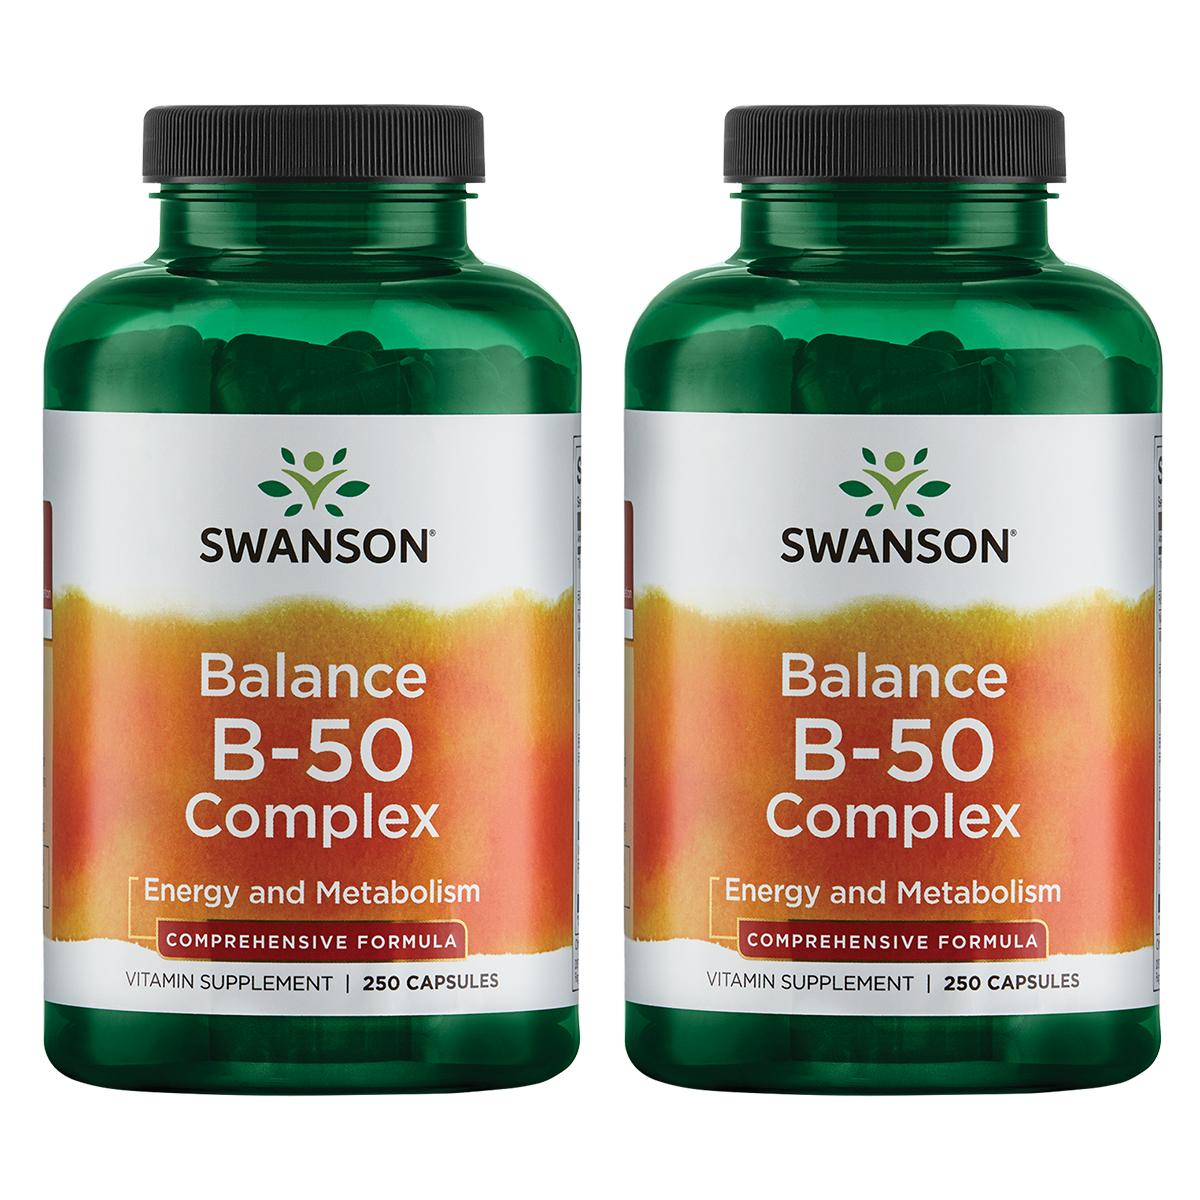 Swanson Premium Balance B-50 Complex 2 Pack Vitamin 250 Caps Vitamin C